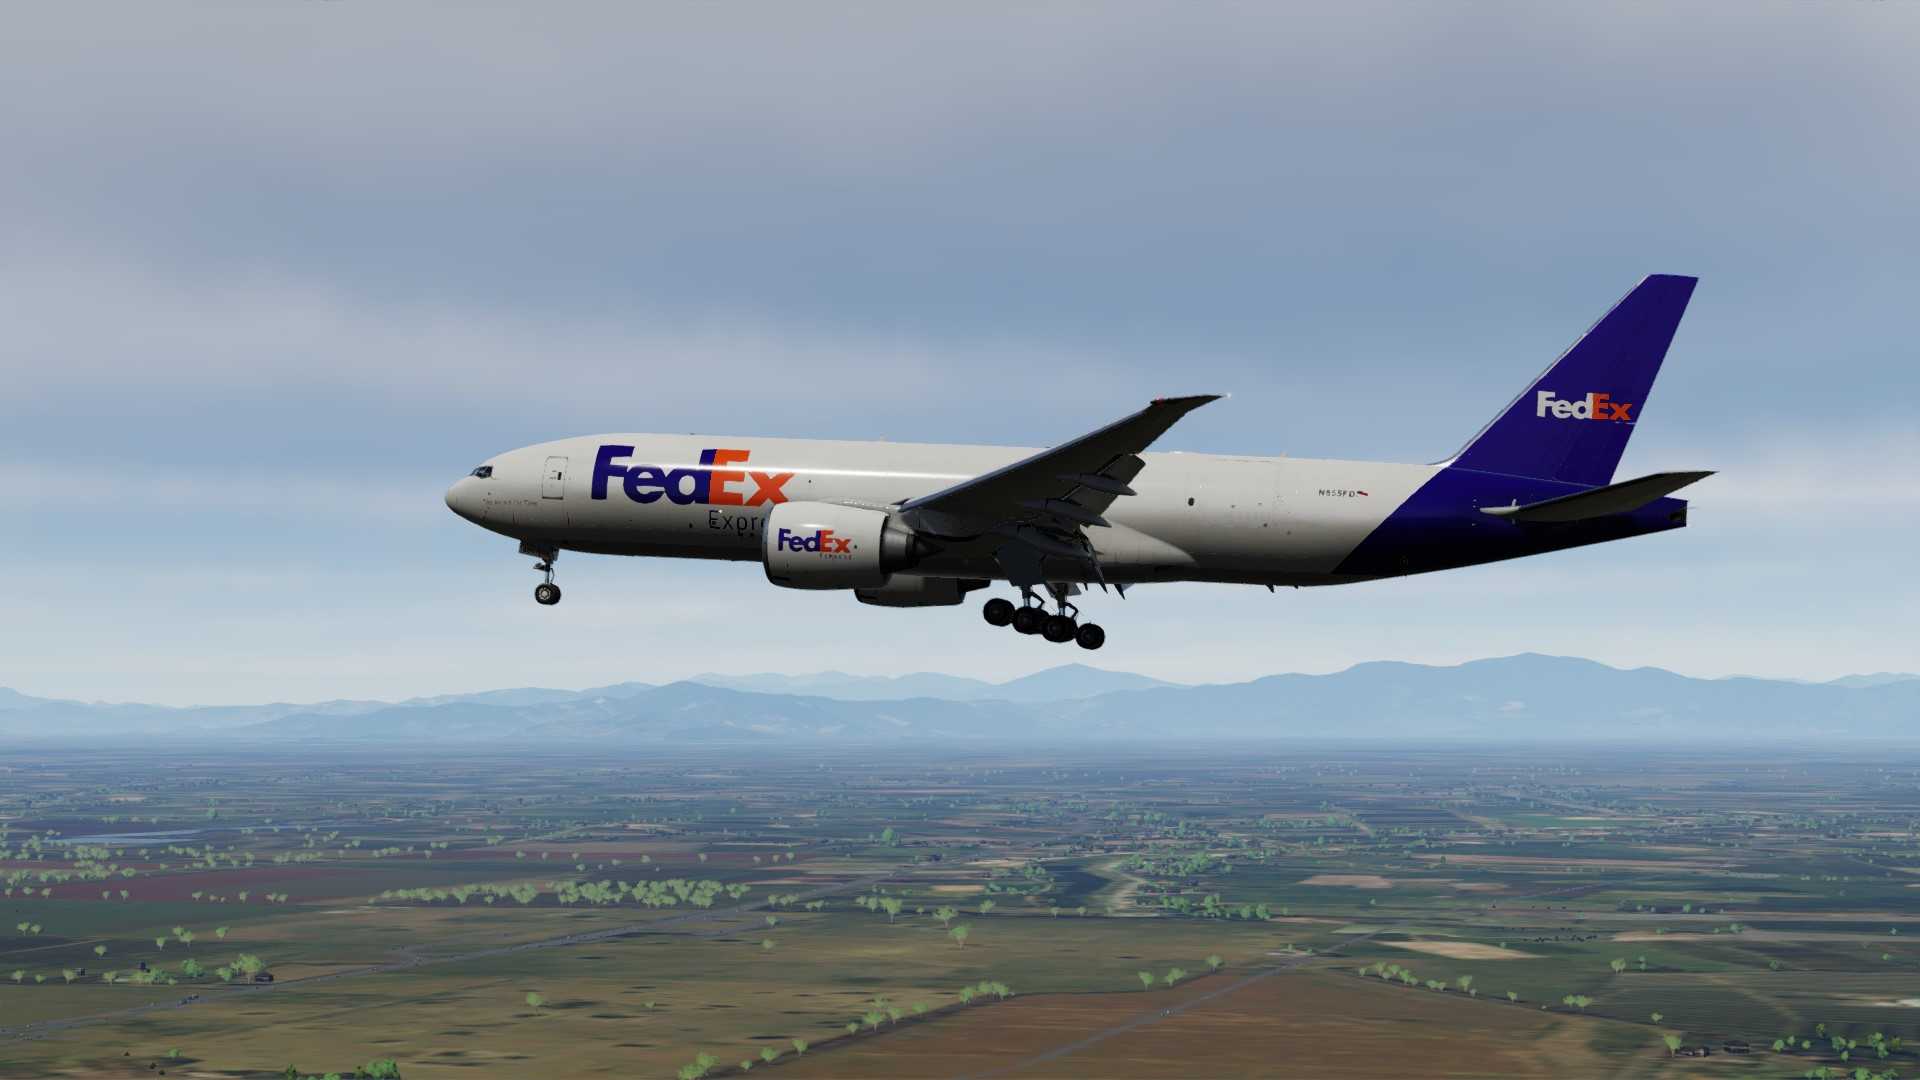 FedEx 77F降落北京首都机场-2416 